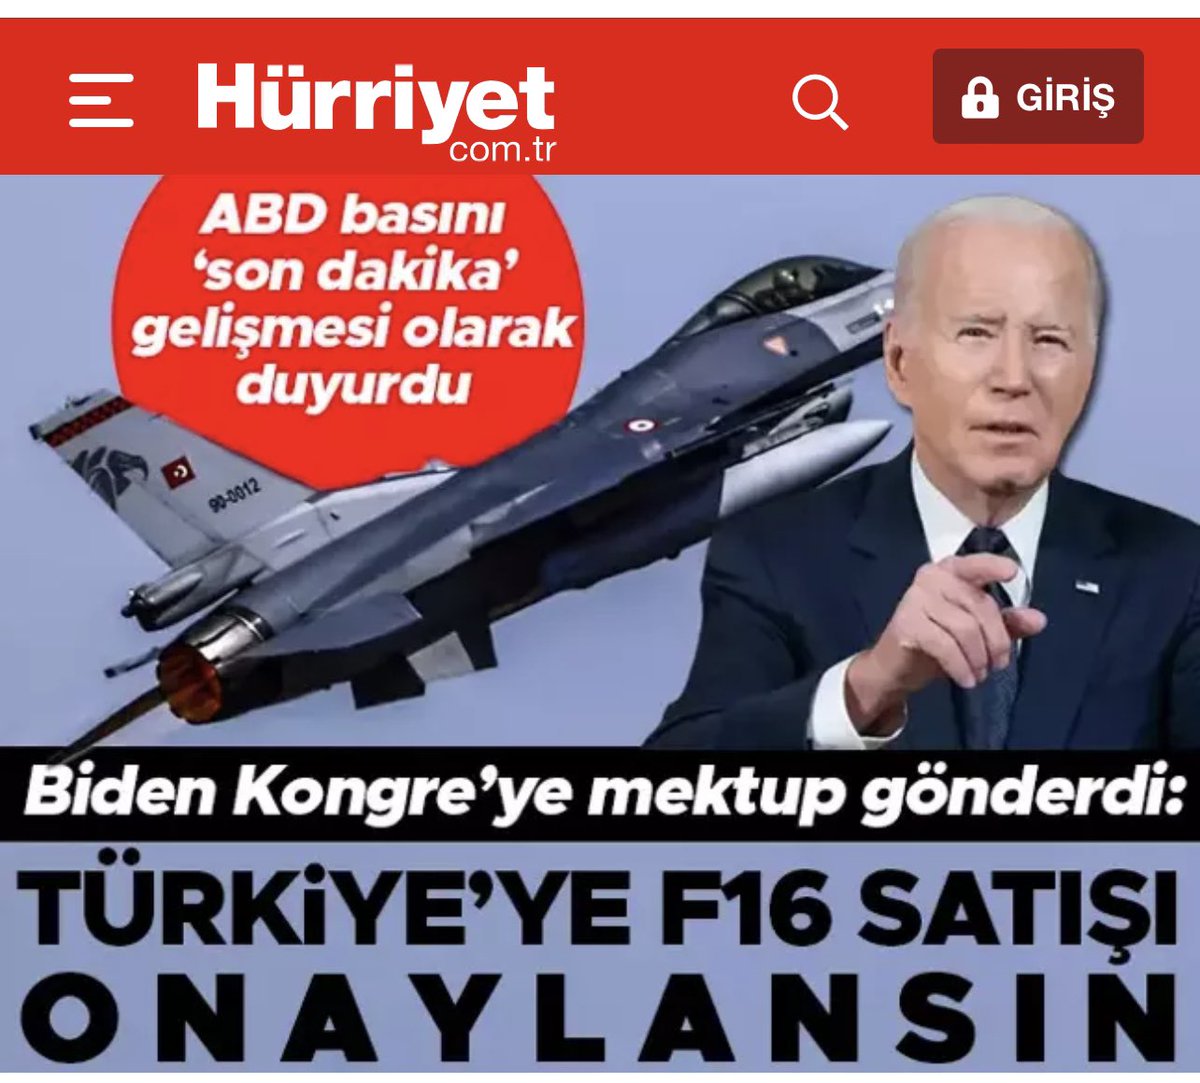 🛑İşte bu Türkiye’nin uluslararası arenadaki gücüdür…. 🛑İran Cumhurbaşkanı Türkiye’de ve 10 anlaşma imzalıyorsun.. 🛑Filistin ile ilgili iki ülke dünyaya ortaklaşa güçlü mesajlar veriyorsun. 🛑Ve gecenin finali. ABD Başkanı Kongreye F-16 mektubu yolluyor. “Satış